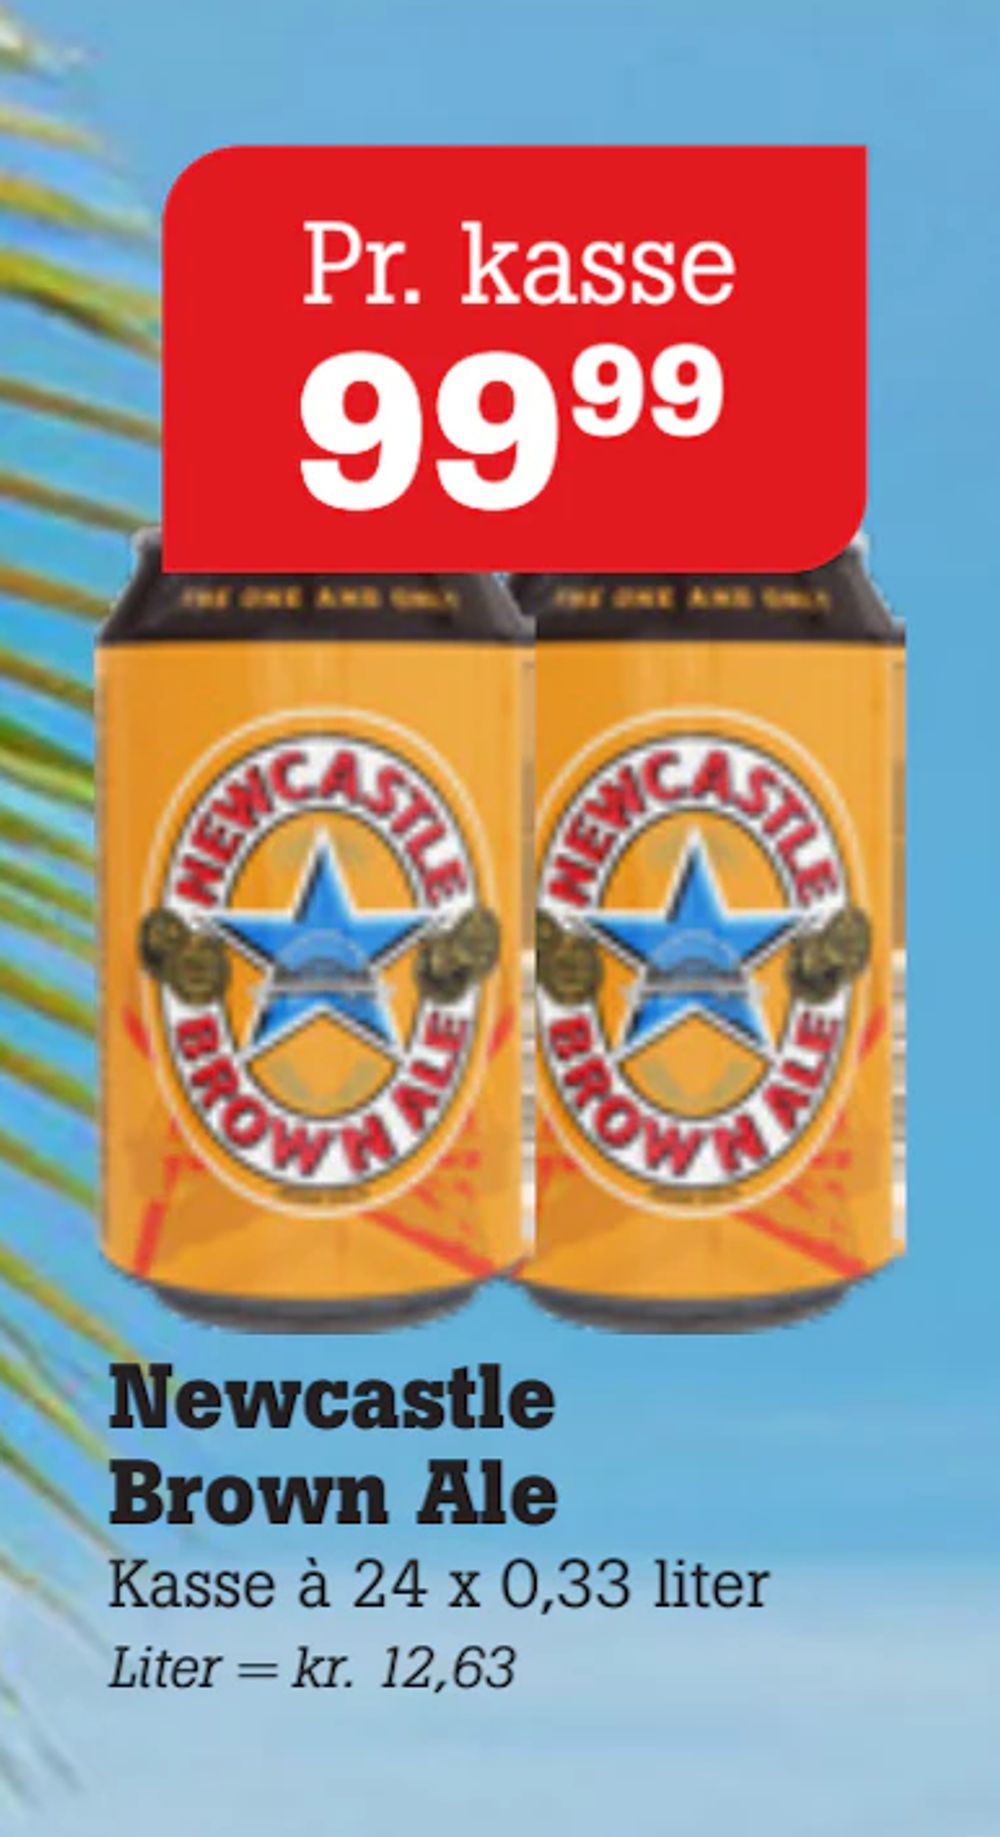 Tilbud på Newcastle Brown Ale fra Poetzsch Padborg til 99,99 kr.